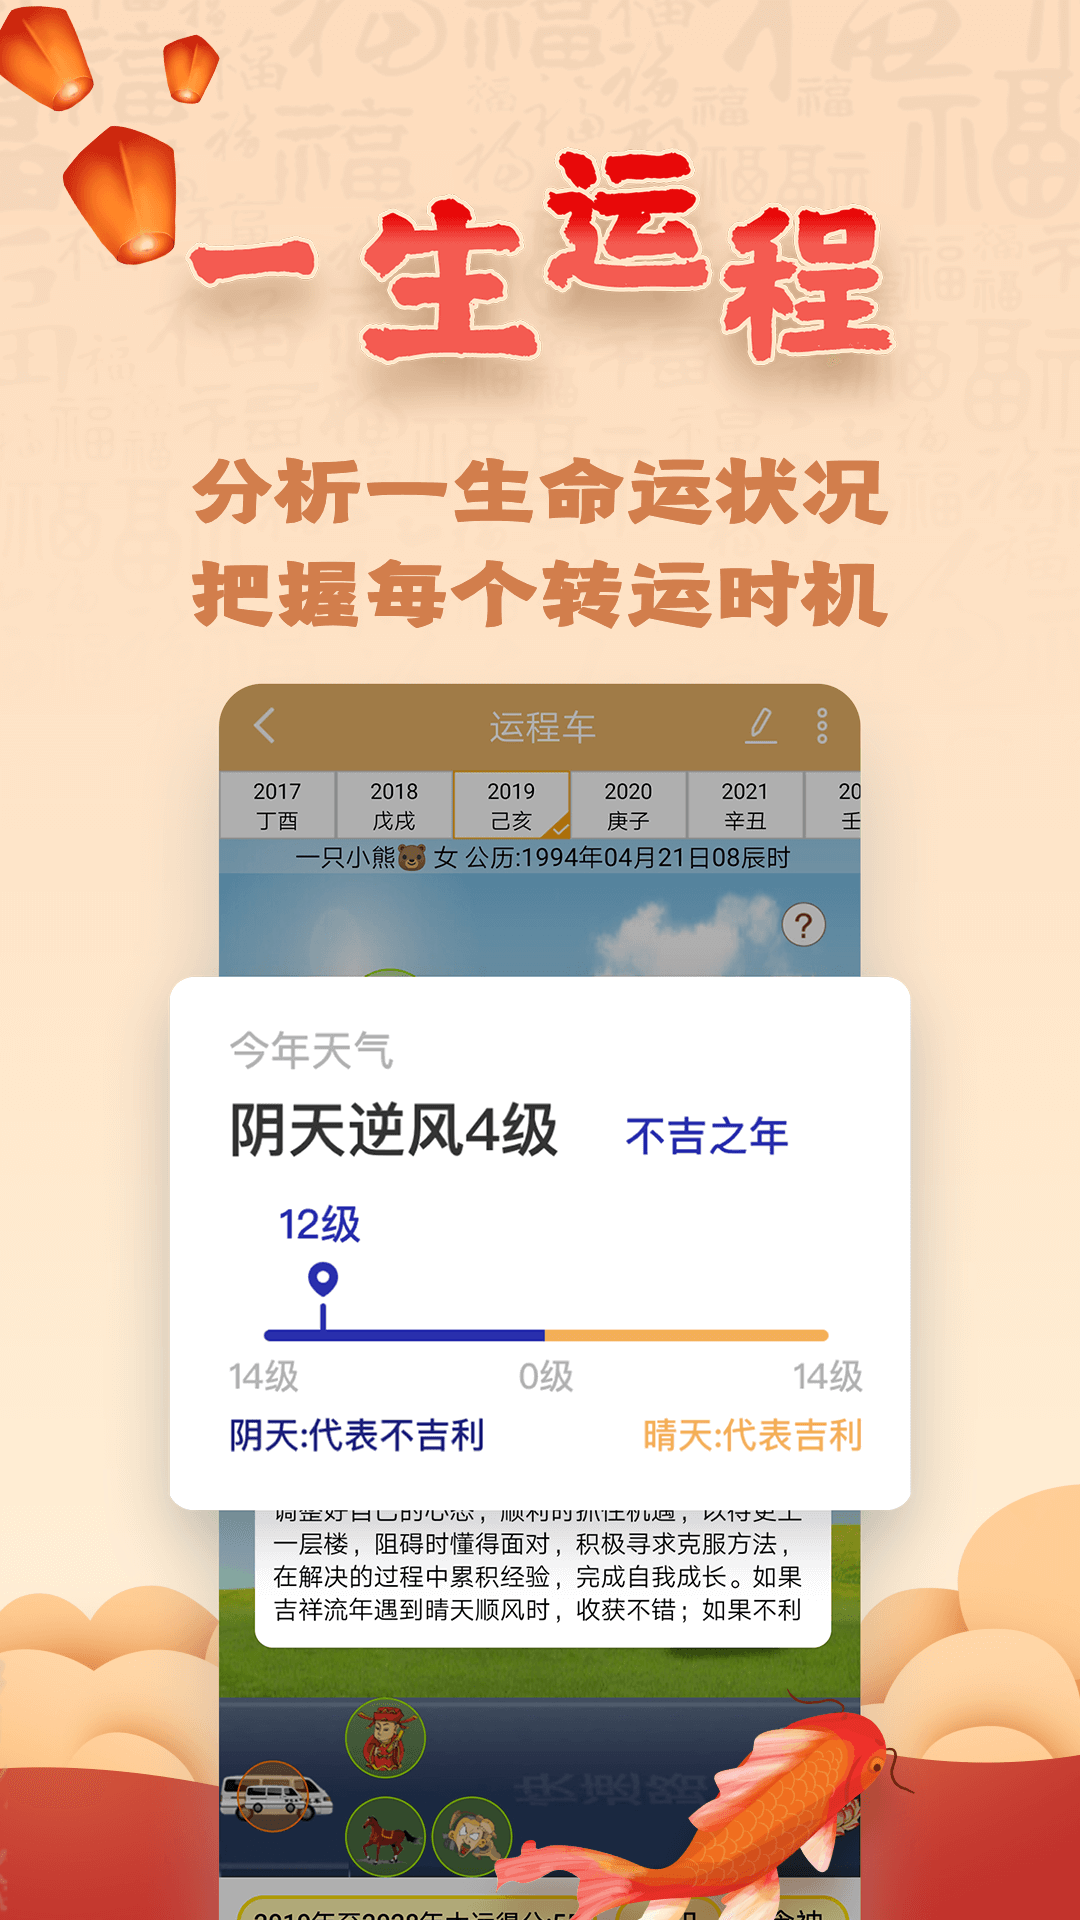 易奇文化app免费下载 易奇文化安卓最新版3.8.4下载 多特软件站安卓网 